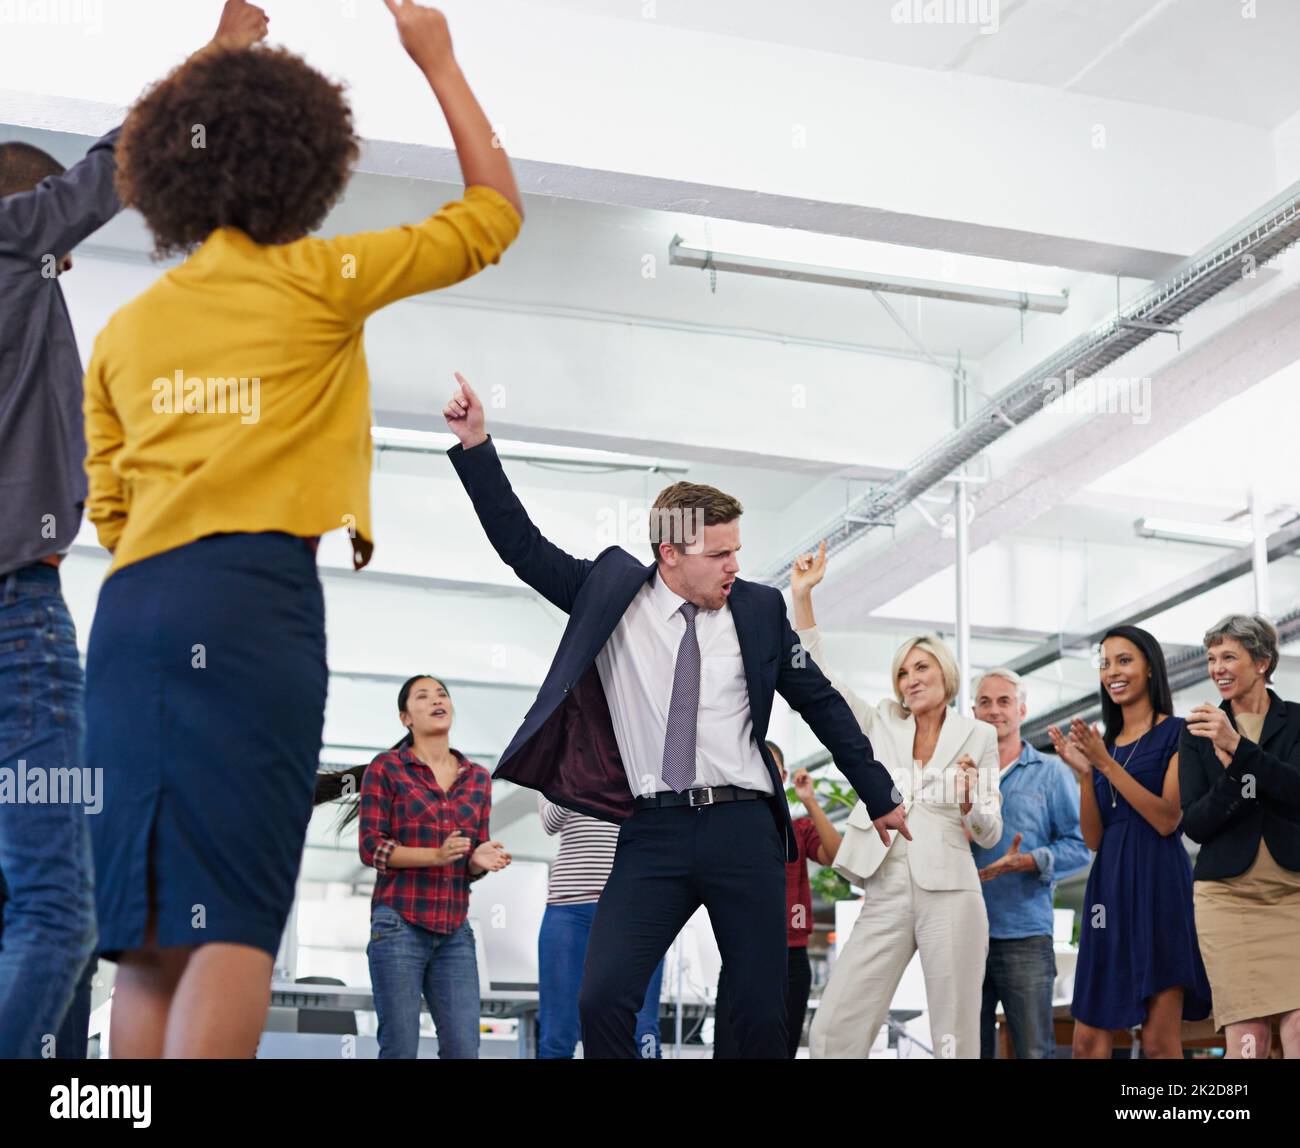 Mettre du plaisir sur le lieu de travail. Photo rognée d'une fête de bureau avec des personnes dansant et ayant un bon moment. Banque D'Images